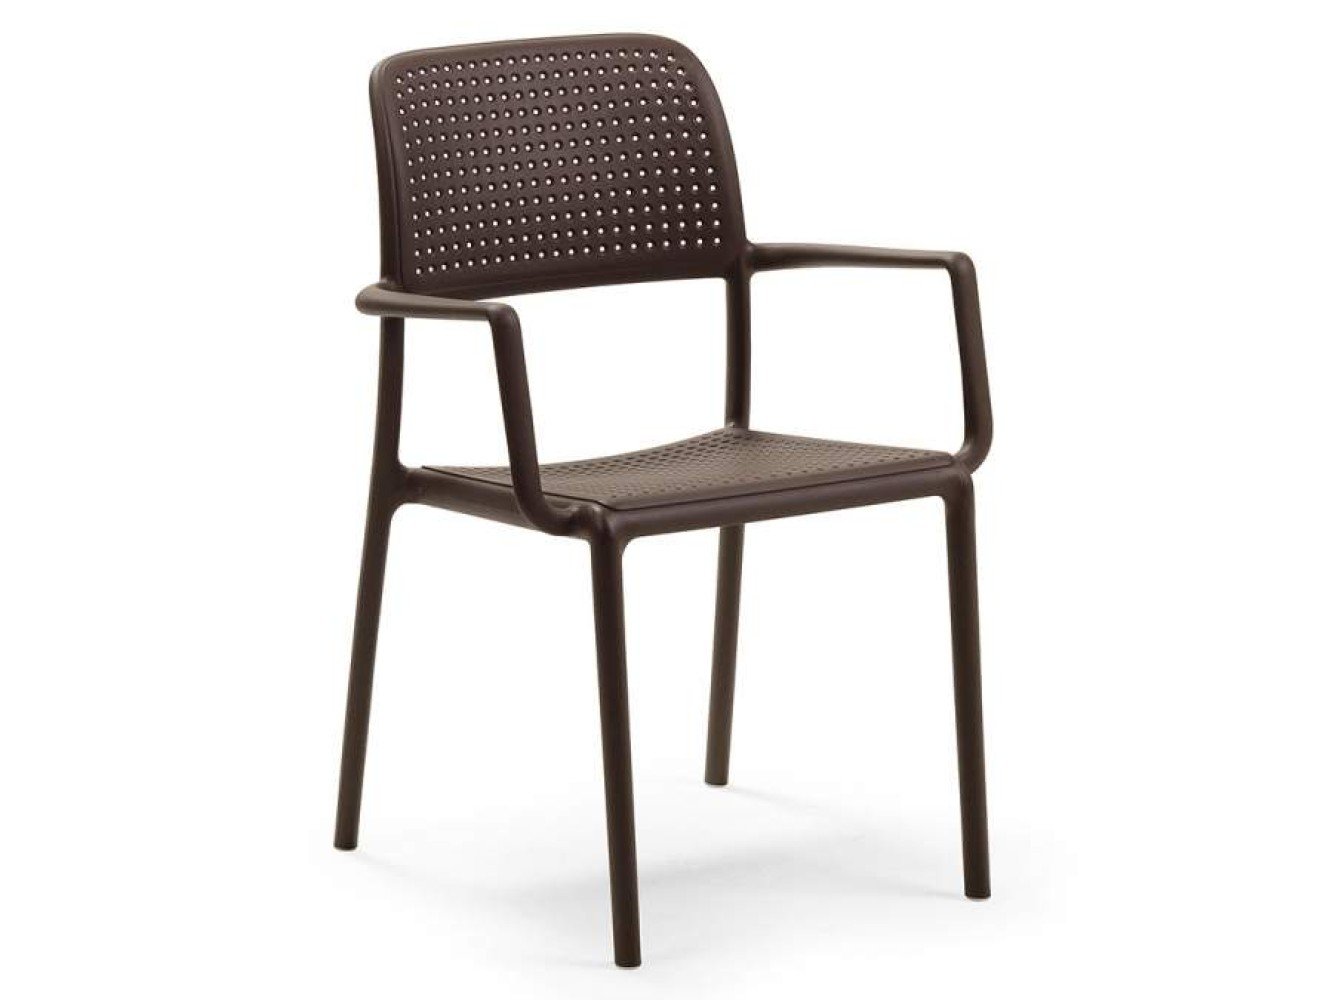 Bora Chair